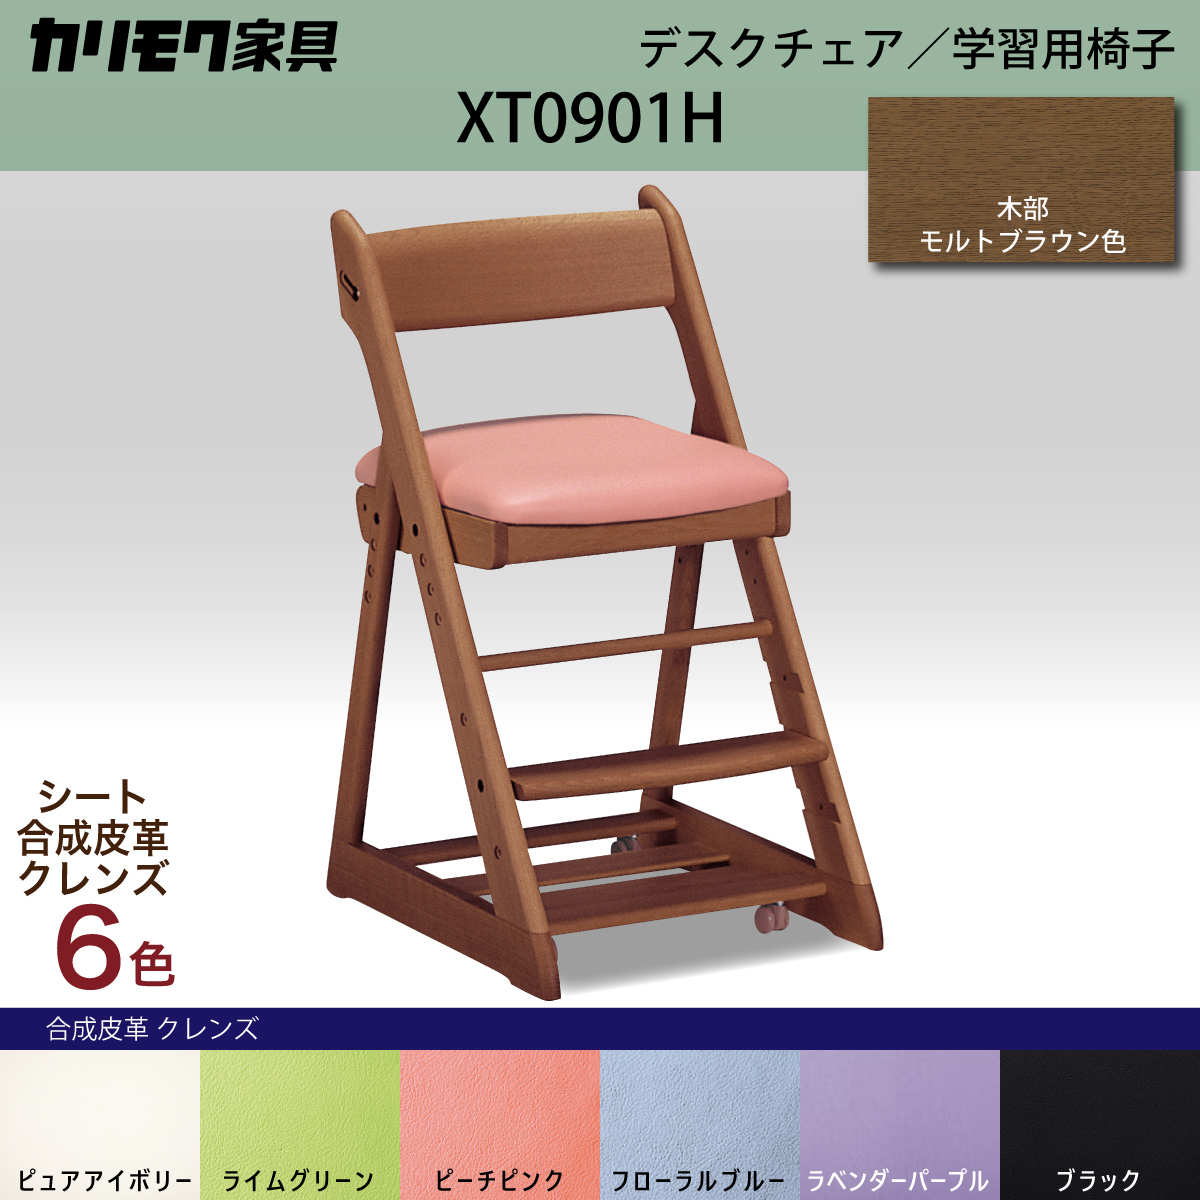 カリモク 学習椅子 おしゃれ XT0901 モルトブラウン色 オーク材 デスク